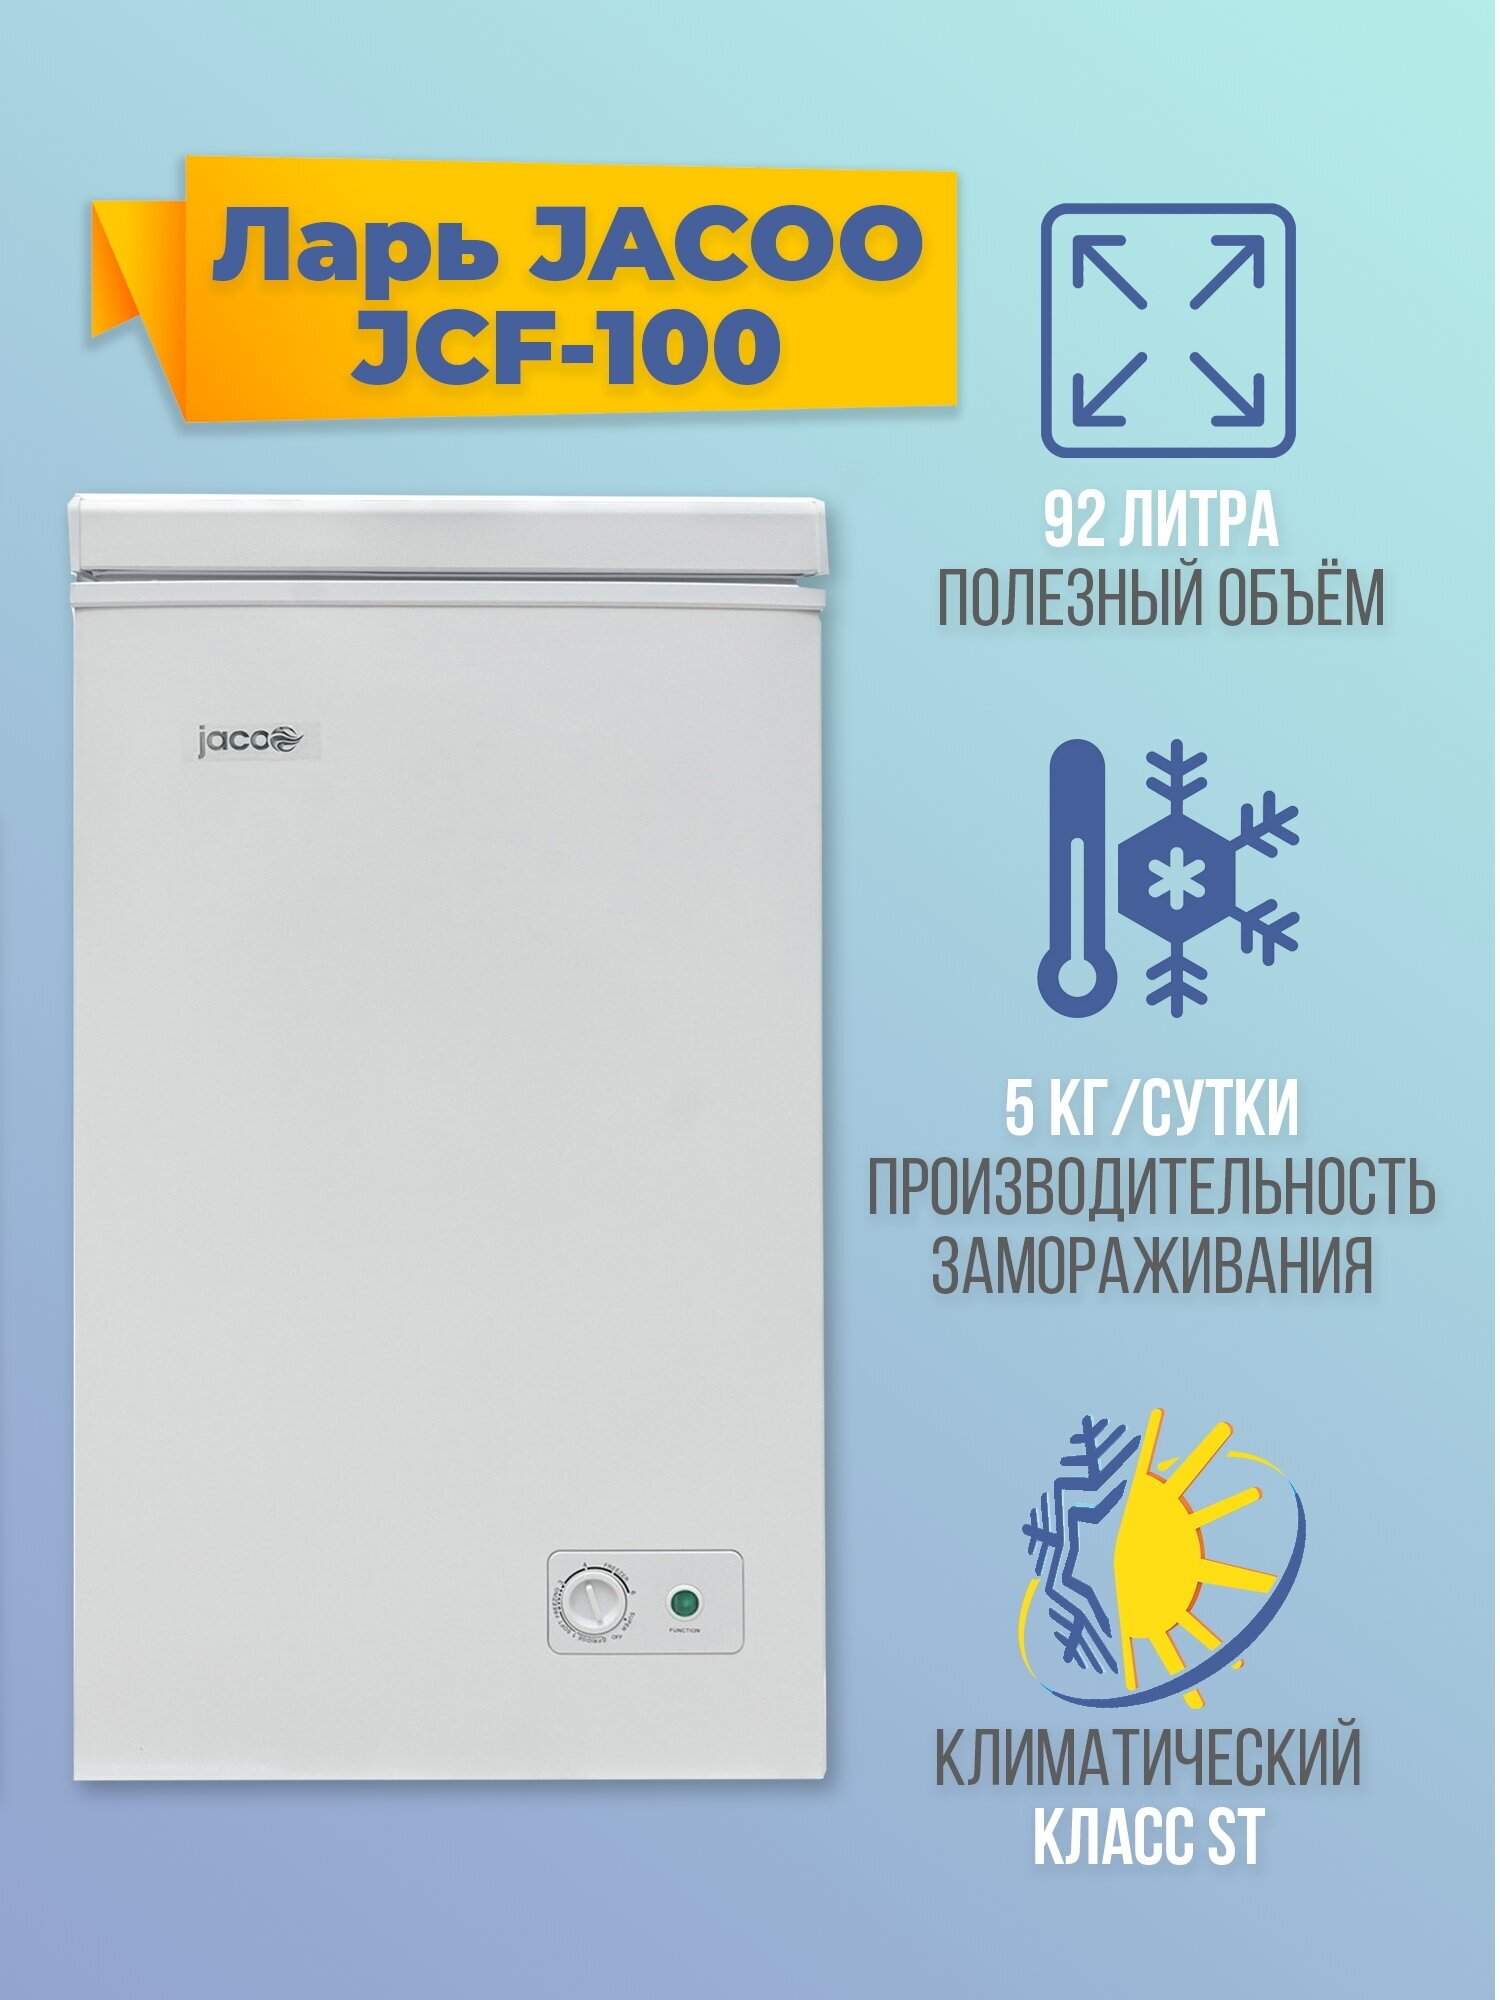 Морозильный ларь JACOO JCF-100, 92 литра